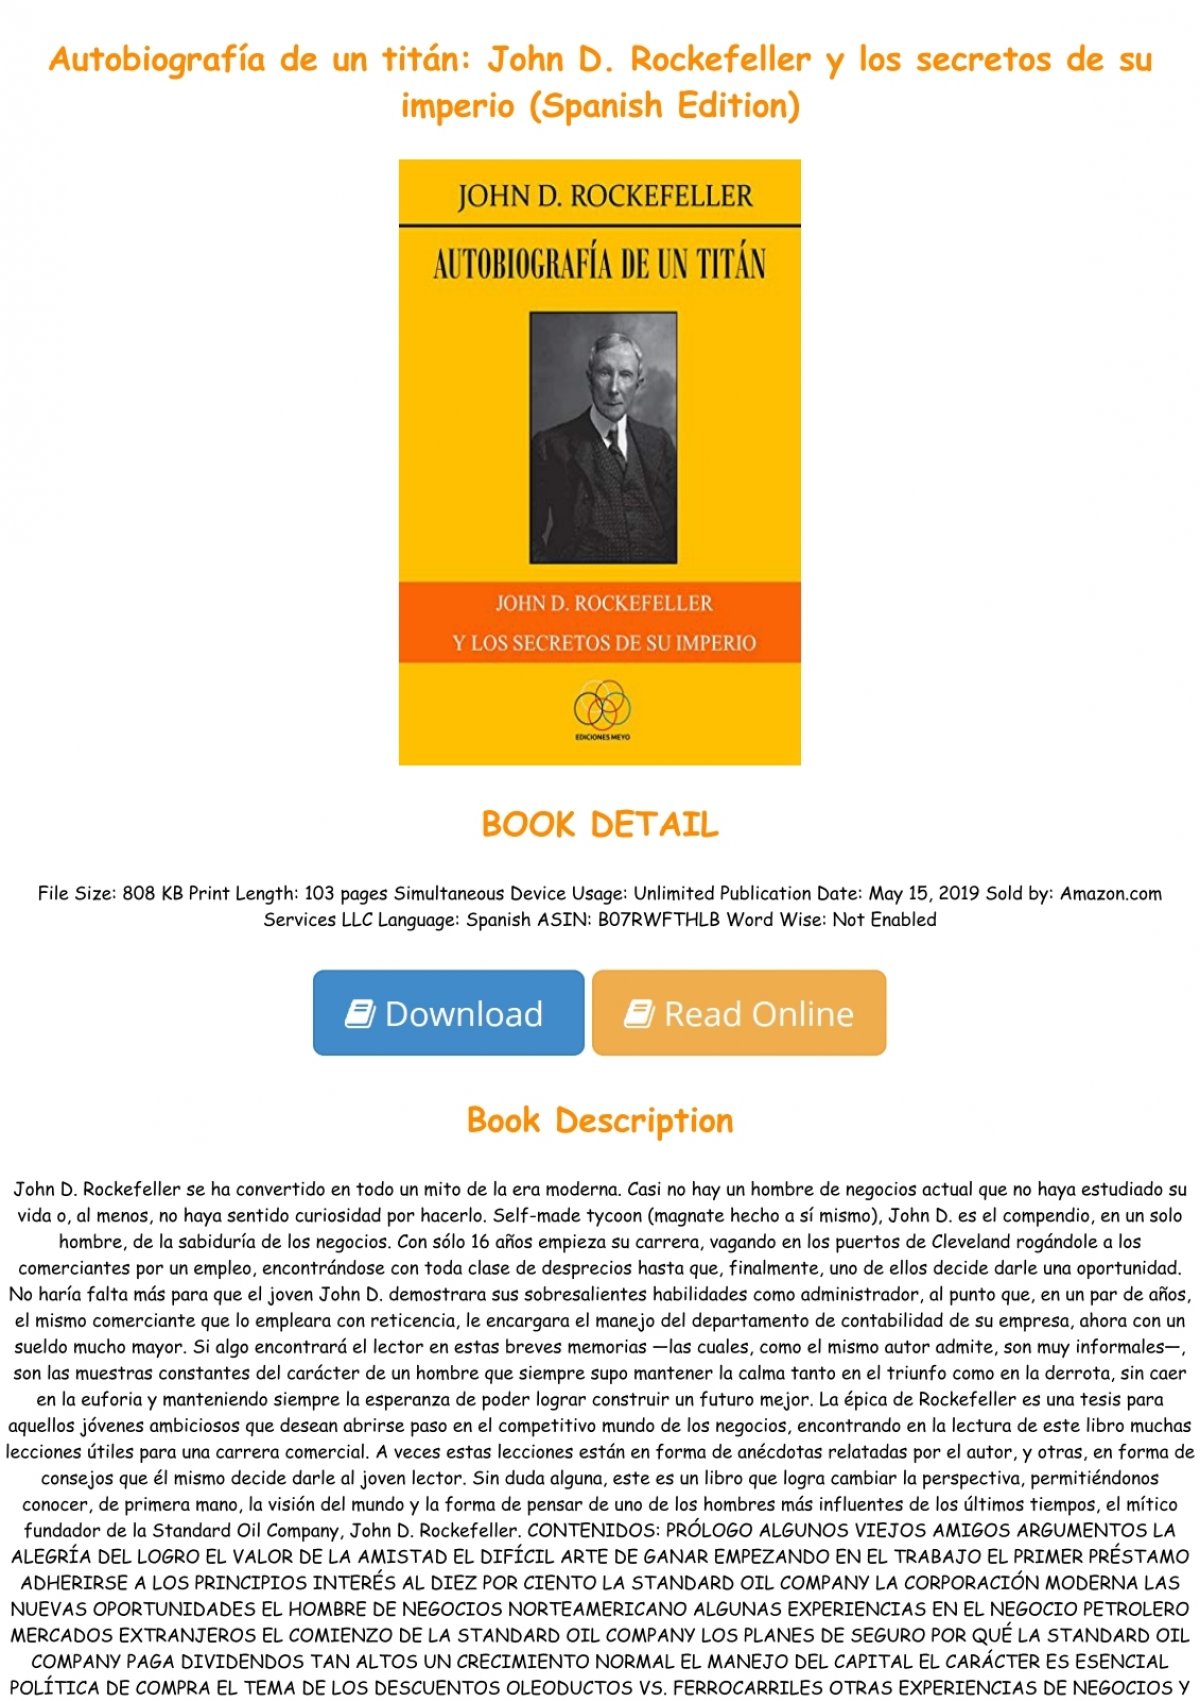 eBooks Kindle: Autobiografía de un titán: John D. Rockefeller  y los secretos de su imperio (Spanish Edition), Rockefeller, John D. ,  Delgado, Jesús